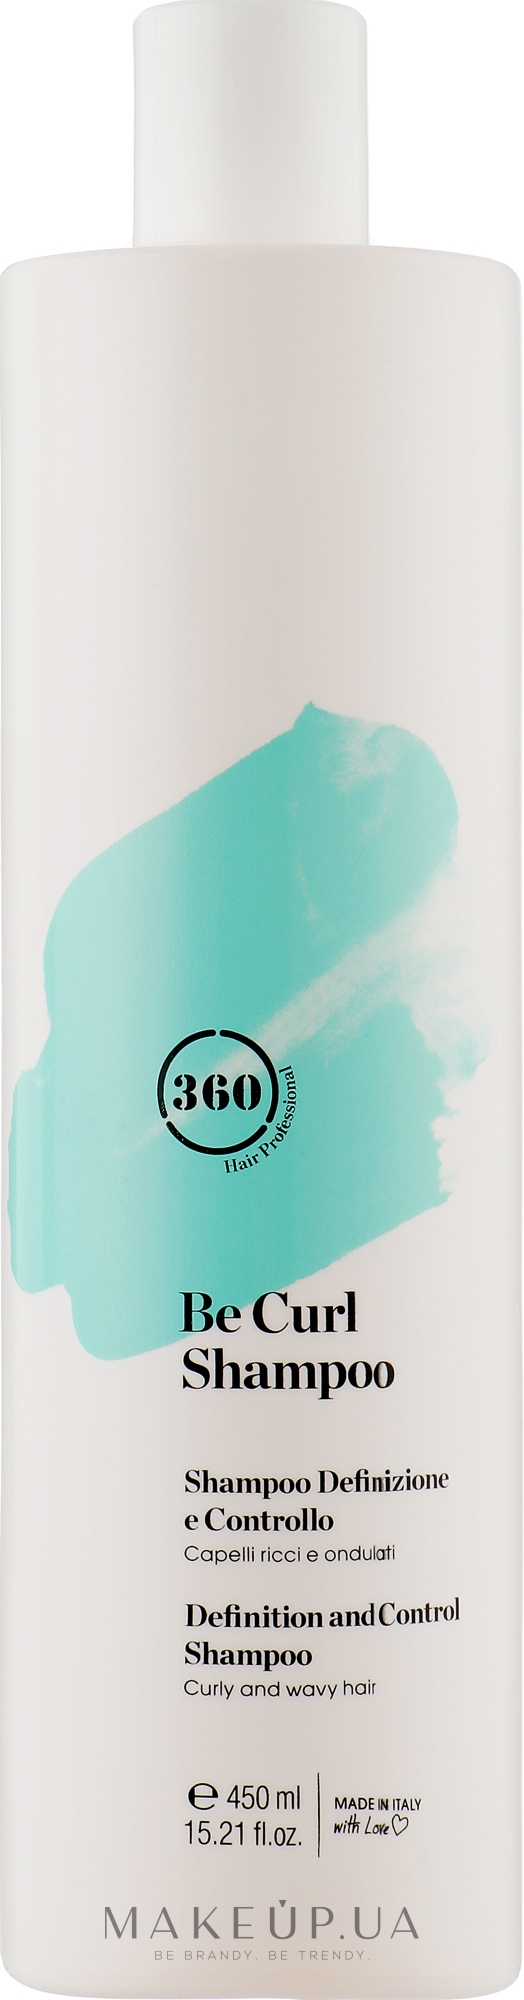 Дисциплинирующий шампунь для кудрявых и волнистых волос - 360 Be Curl Shampoo — фото 450ml